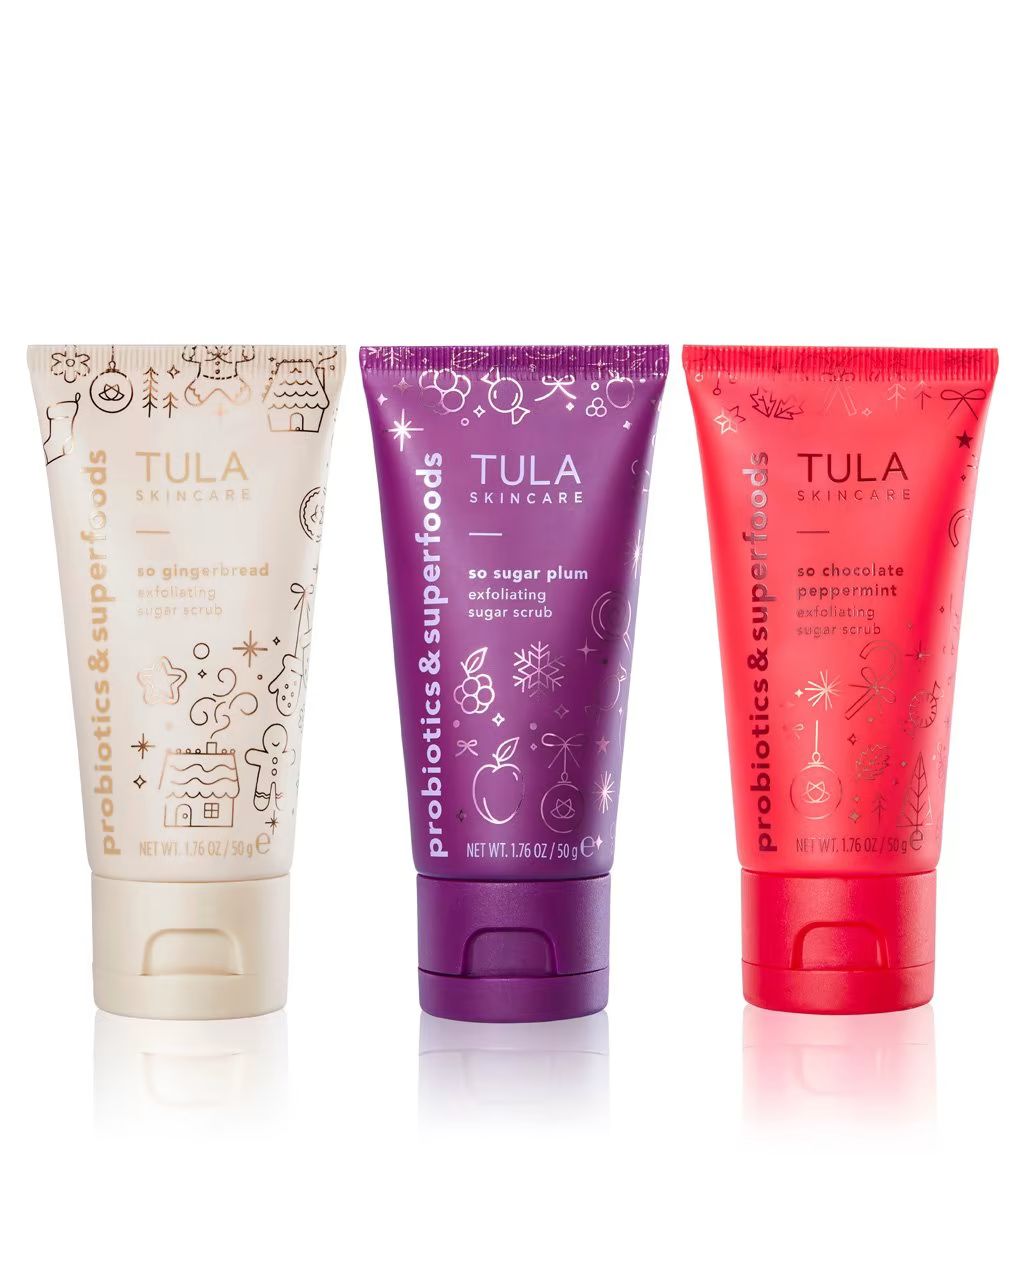 So Sweet Holiday Sugar Scrubs | TULA Skincare | Tula Skincare